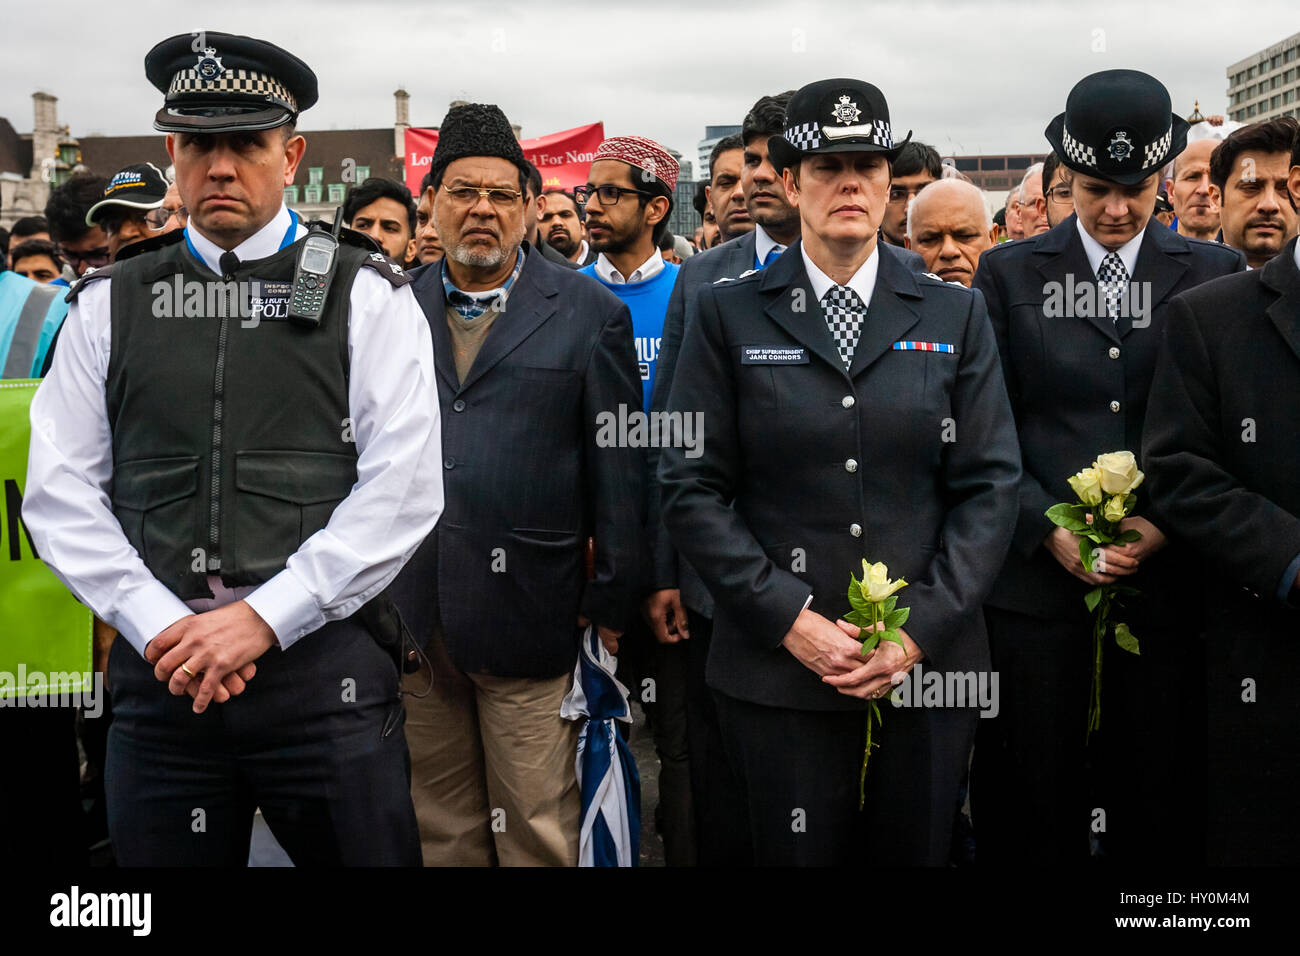 Une semaine après l'attaque terroriste de Londres la communauté musulmane et la Force de police ont rencontré leurs hommages aux victimes, le pont de Westminster, London, UK Banque D'Images